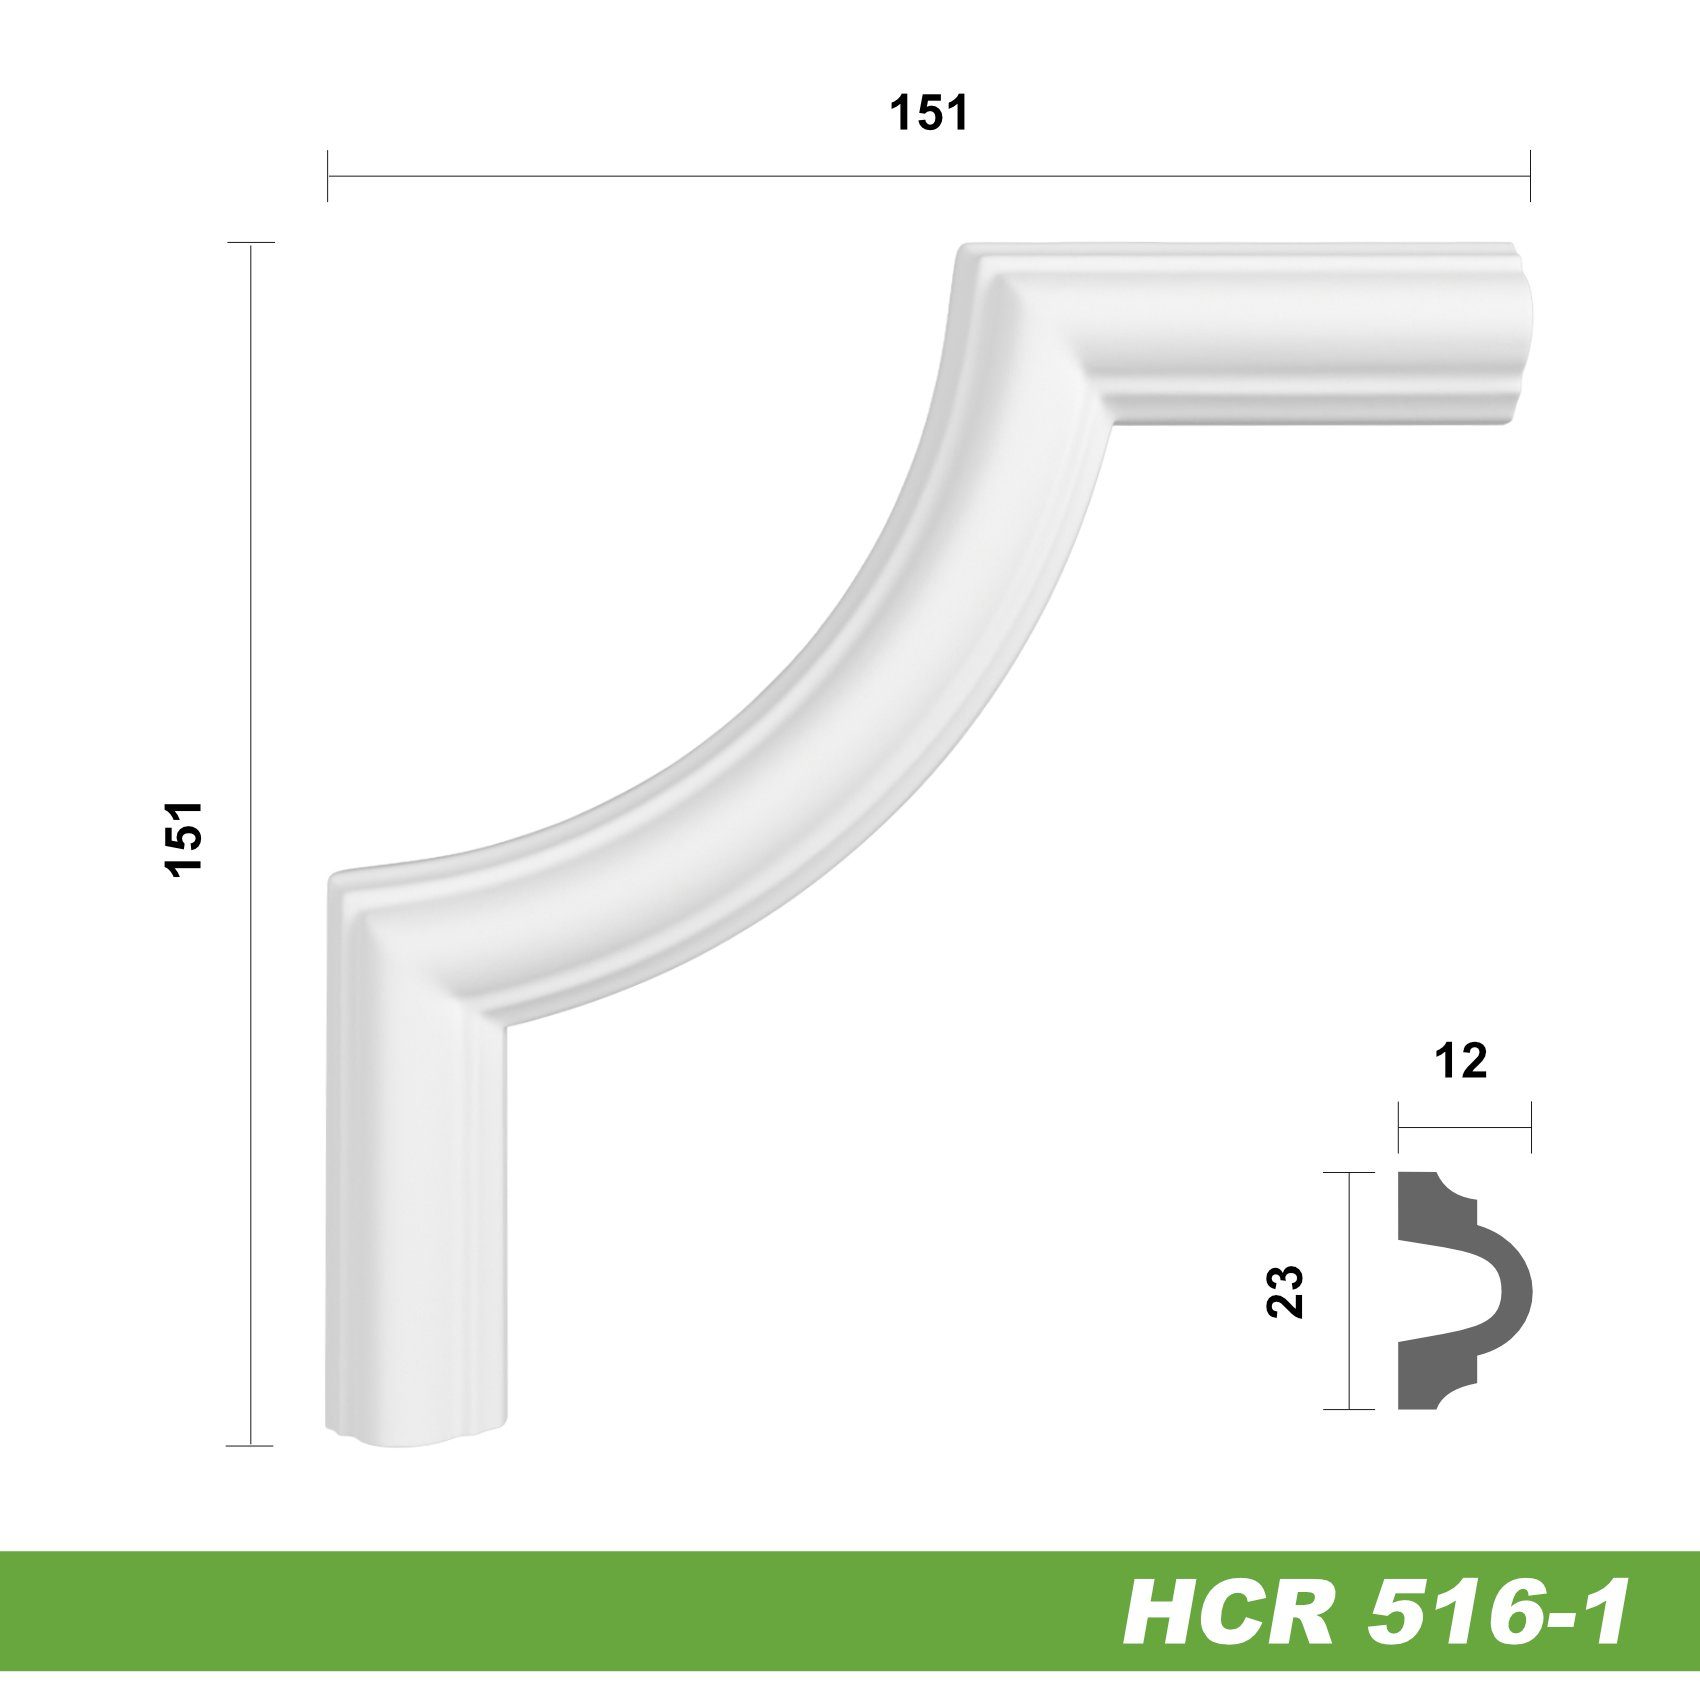 Hexim Zierleiste HCR516-1, 2 Ecken, HEXIM Eckstück aus PU-Polyurethane -  extrem widerstandsfähig, schneeweiß & modern (2 Stück HCR516-1) Stuck  Verzierung Rahmen Vertäfelung Weiß